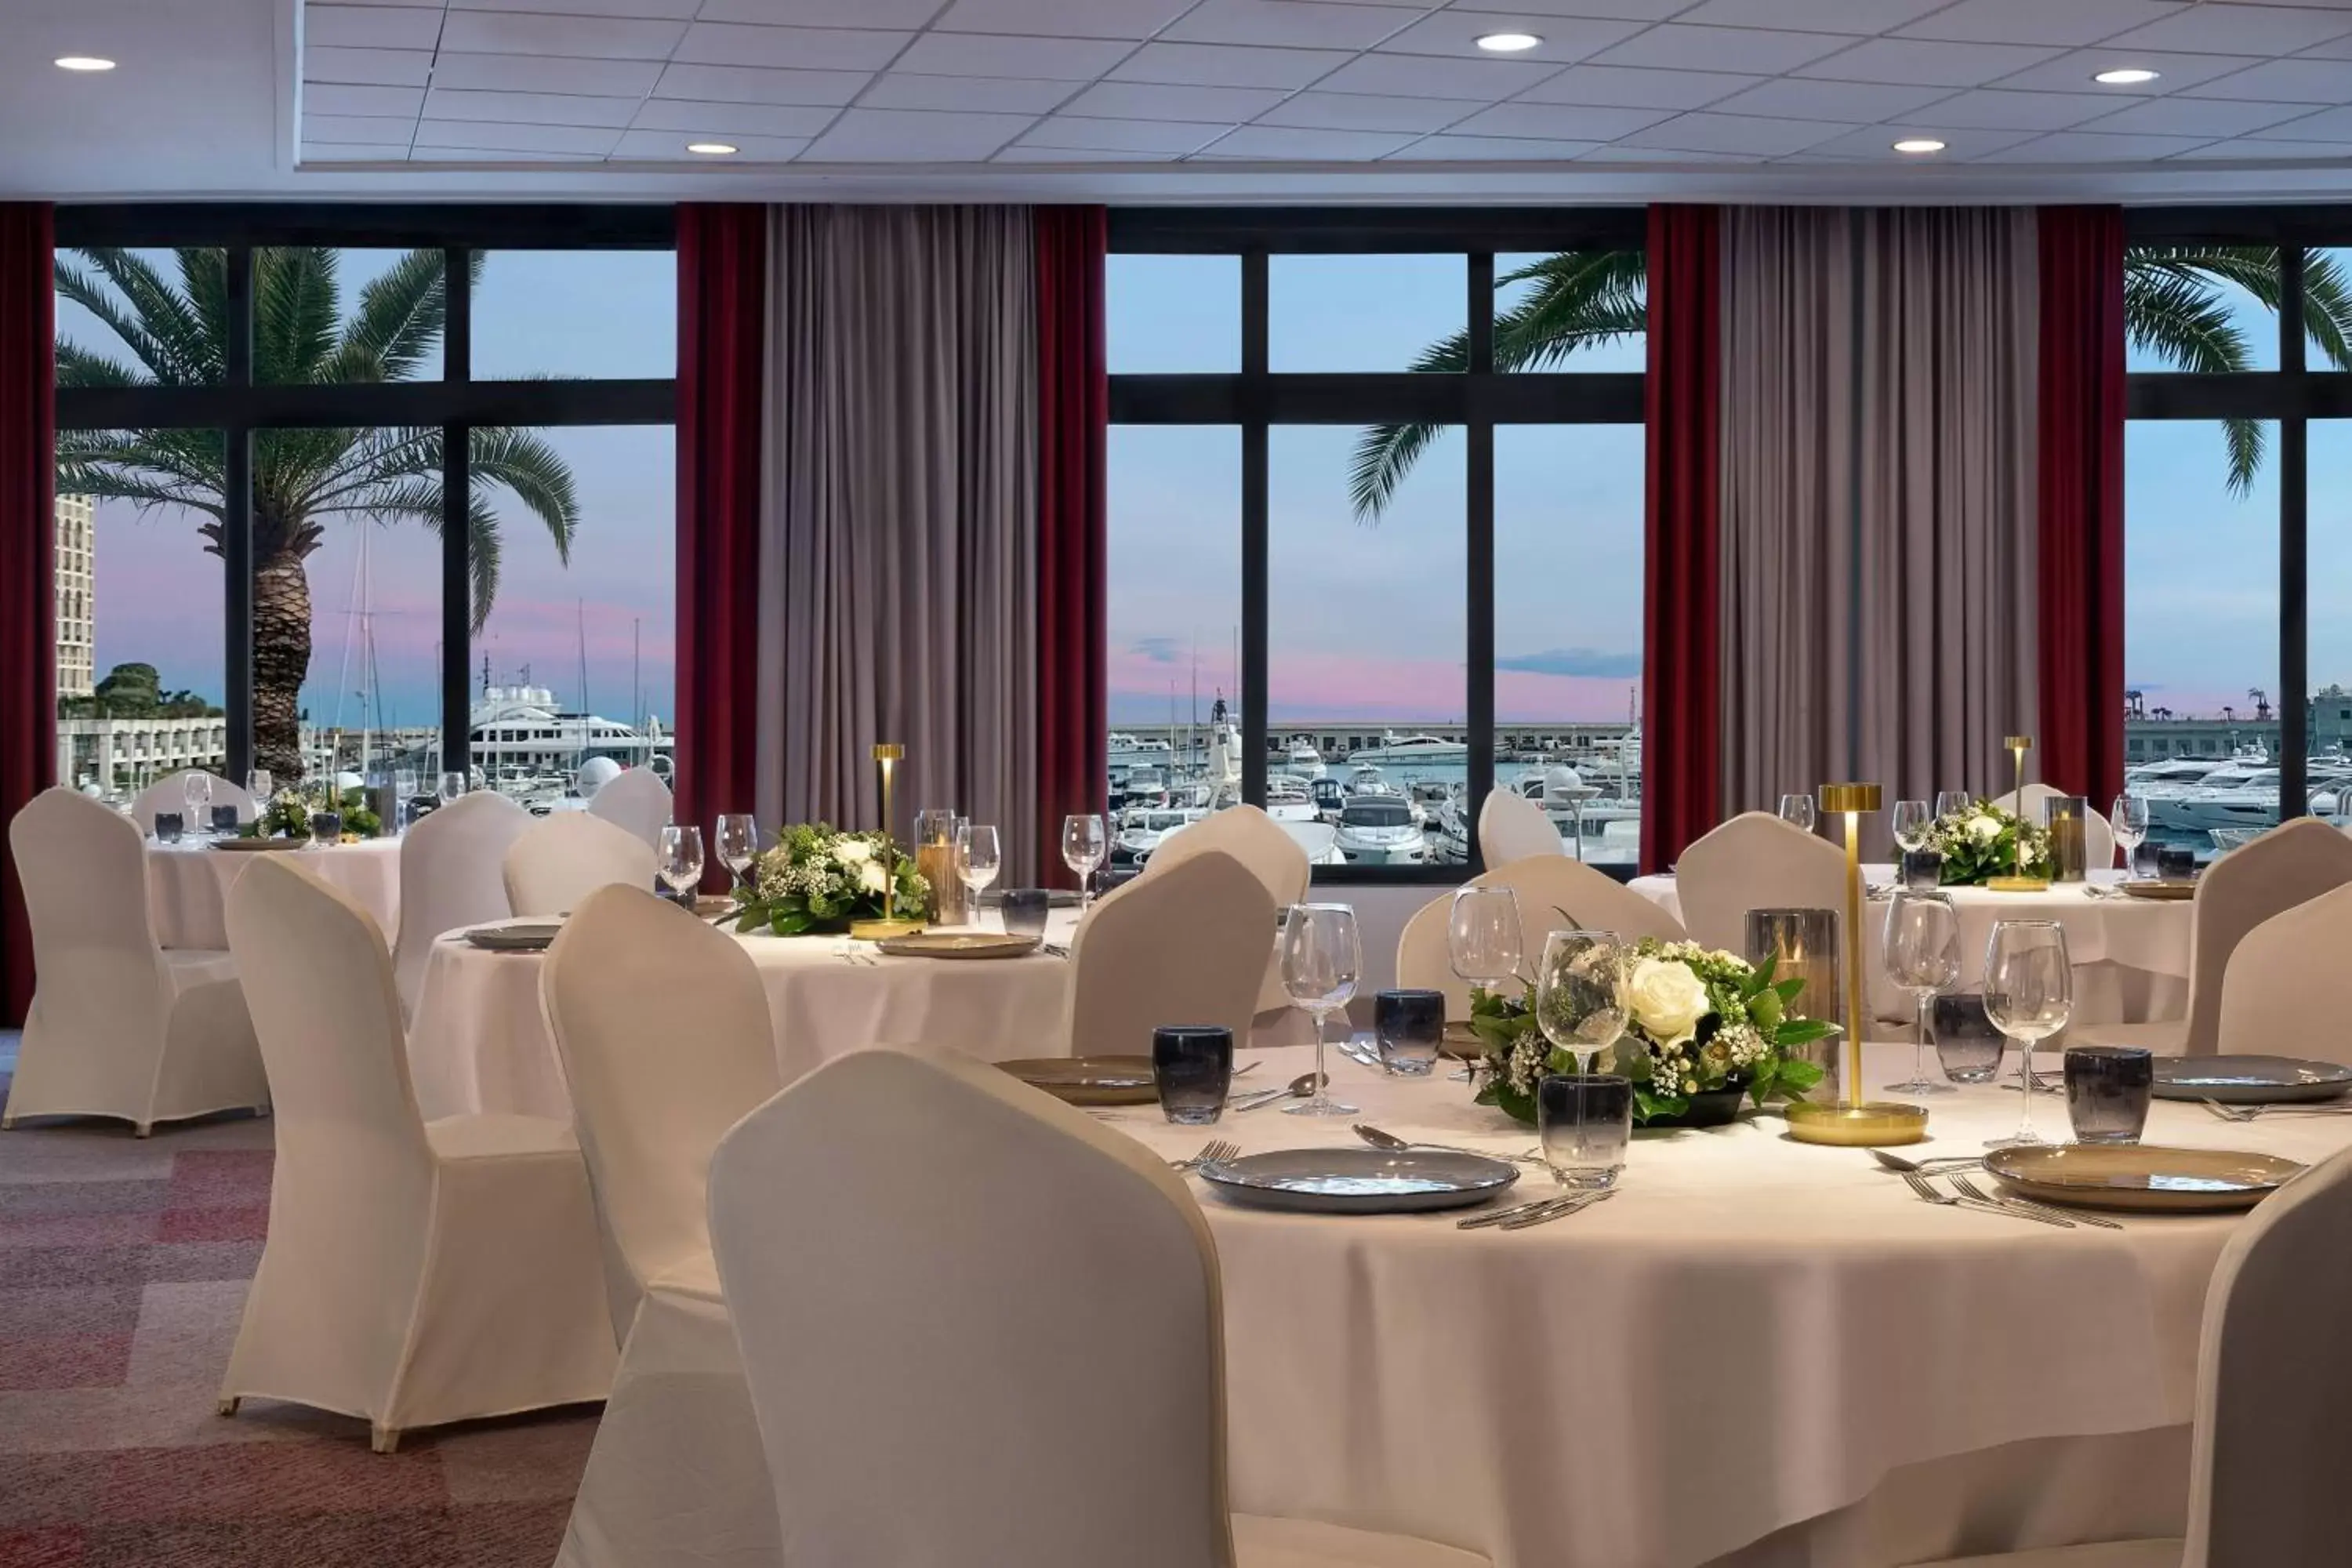 Banquet/Function facilities, Banquet Facilities in Riviera Marriott Hotel La Porte De Monaco